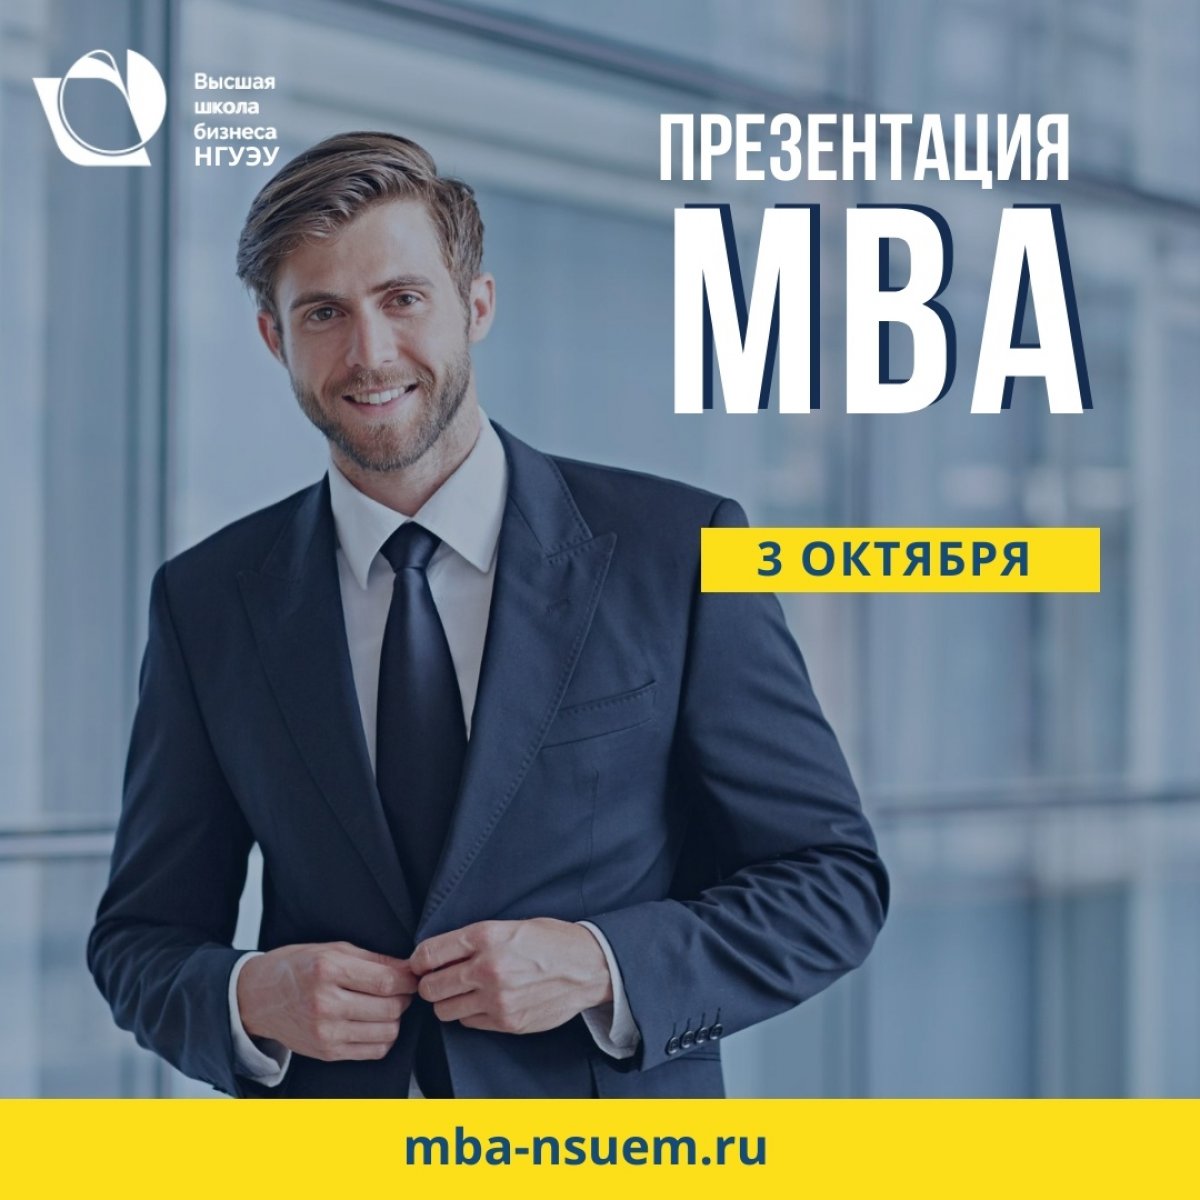 📍 3 октября в 18:30 в Высшая школа бизнеса НГУЭУ пройдет презентация программы MBA-Стратегический мененджмент.